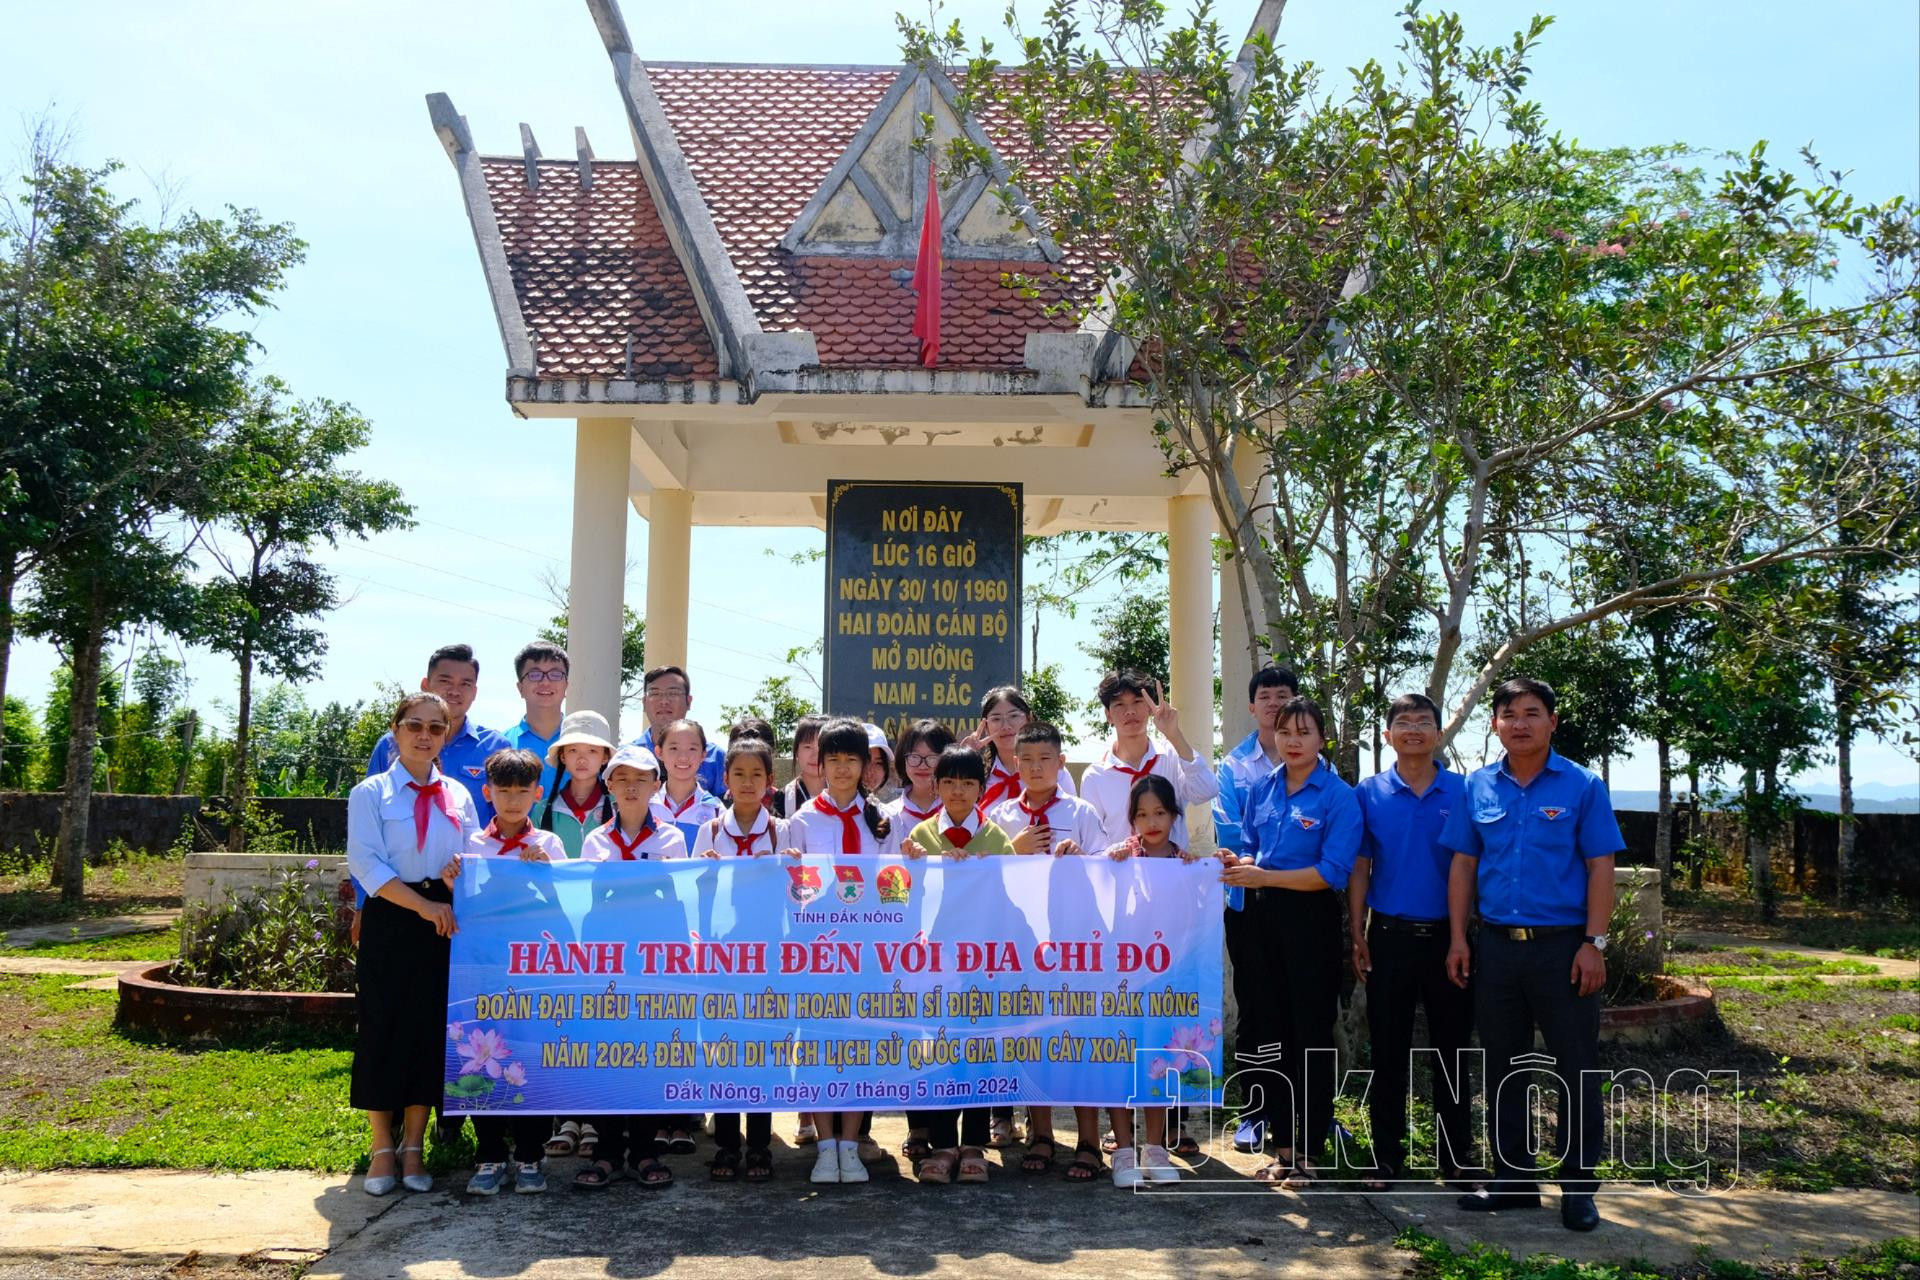 Đoàn đại biểu tham gia Liên hoan “Chiến sĩ nhỏ Điện Biên” tỉnh Đắk Nông năm 2024 đến thăm địa chỉ đỏ tại Khu di tích lịch sử cấp Quốc gia đặc biệt bon Cây Xoài, xã Đắk Nia, TP. Gia Nghĩa